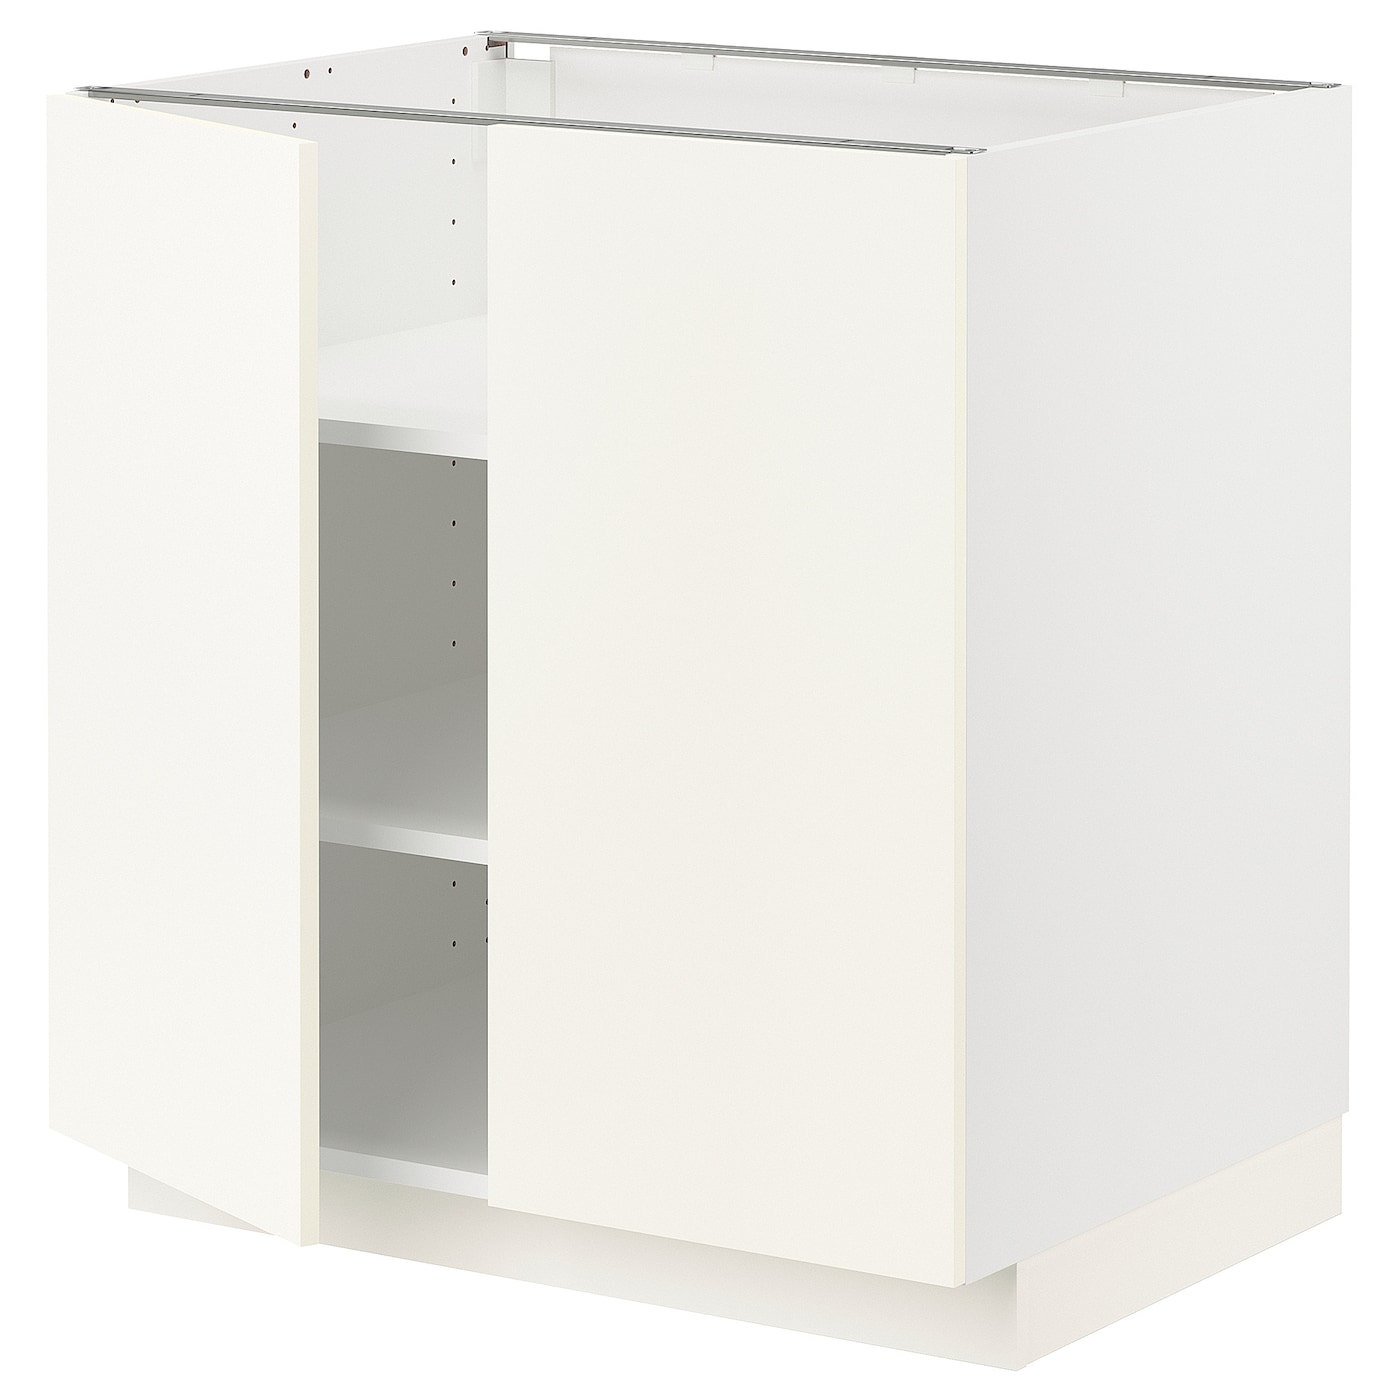 Напольный шкаф - IKEA METOD, 88x62x80см, белый, МЕТОД ИКЕА